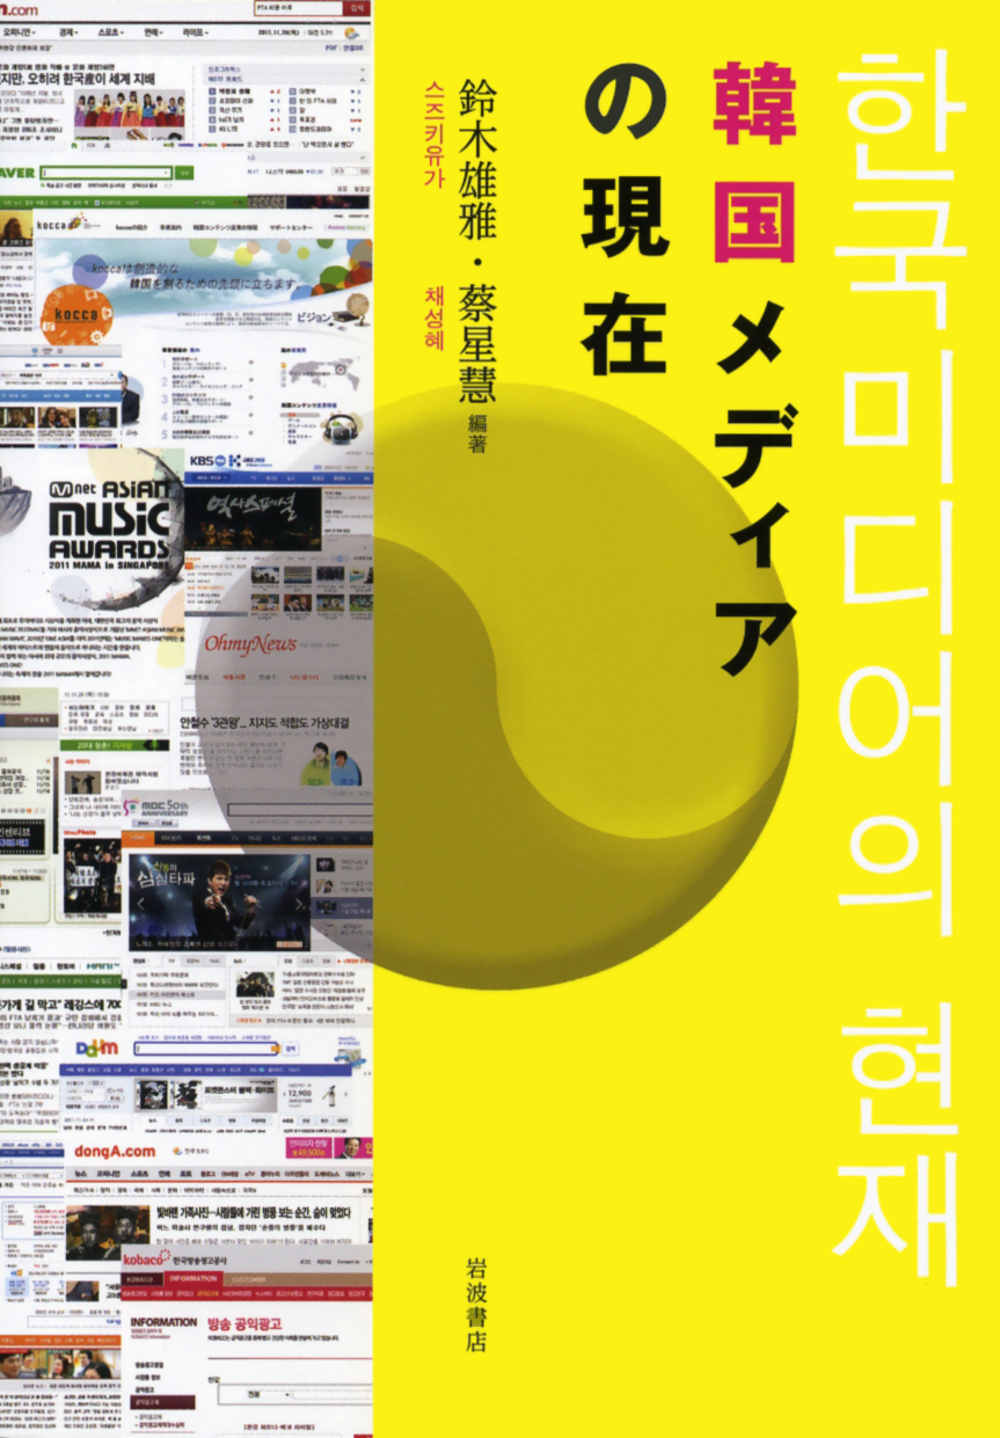 韓国メディアの現在の商品画像